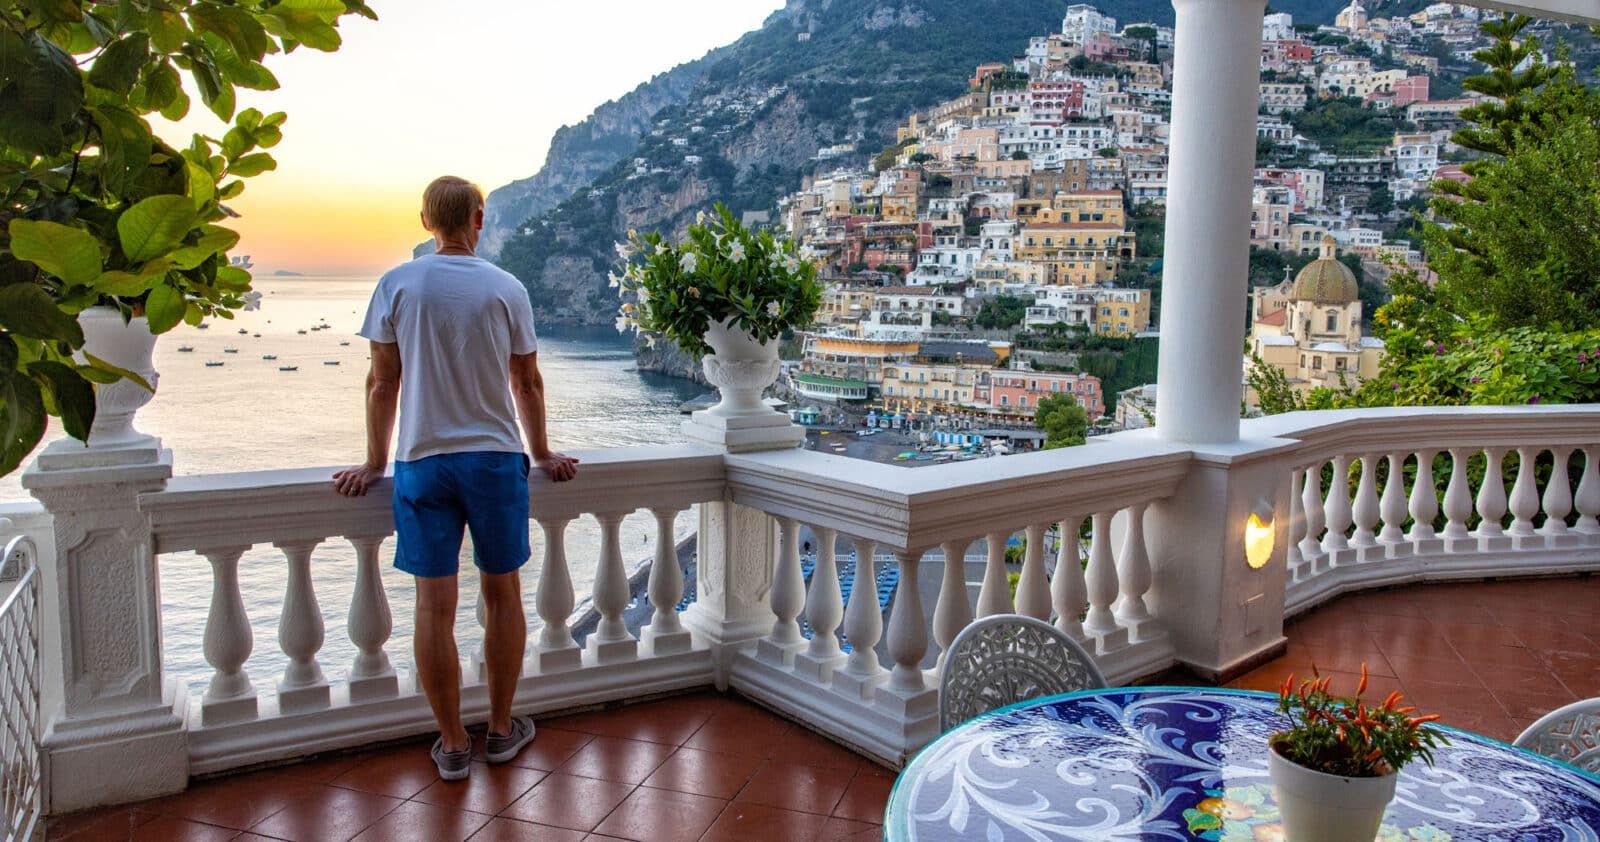 Where to Stay on the Amalfi Coast